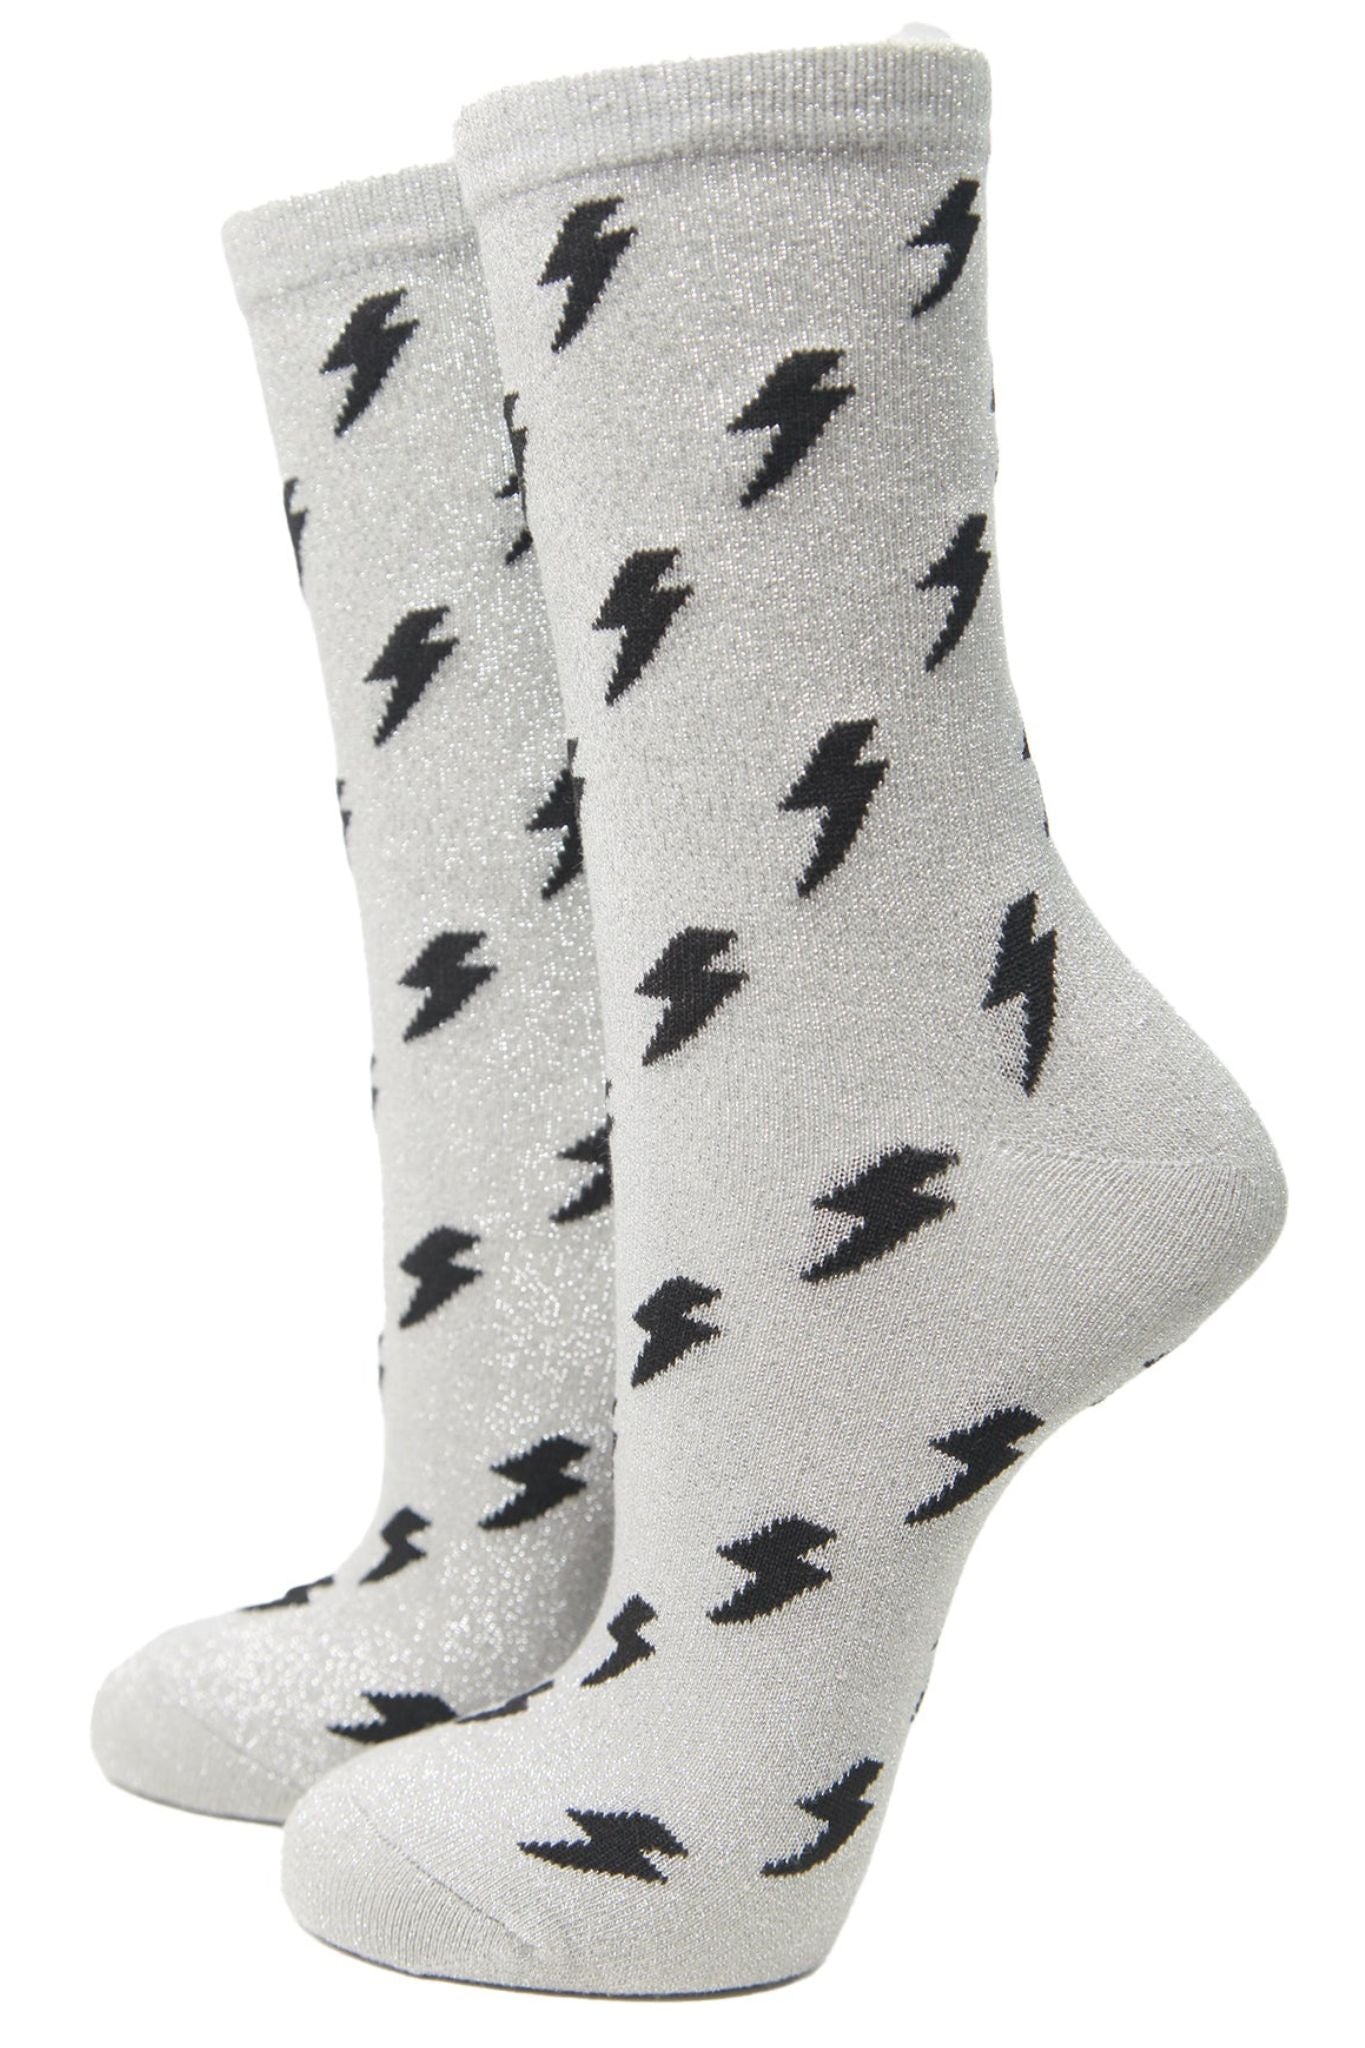 Women's Glitter Ankle Socks Lightning Print Thunder Bolt Silver Sparkly Black